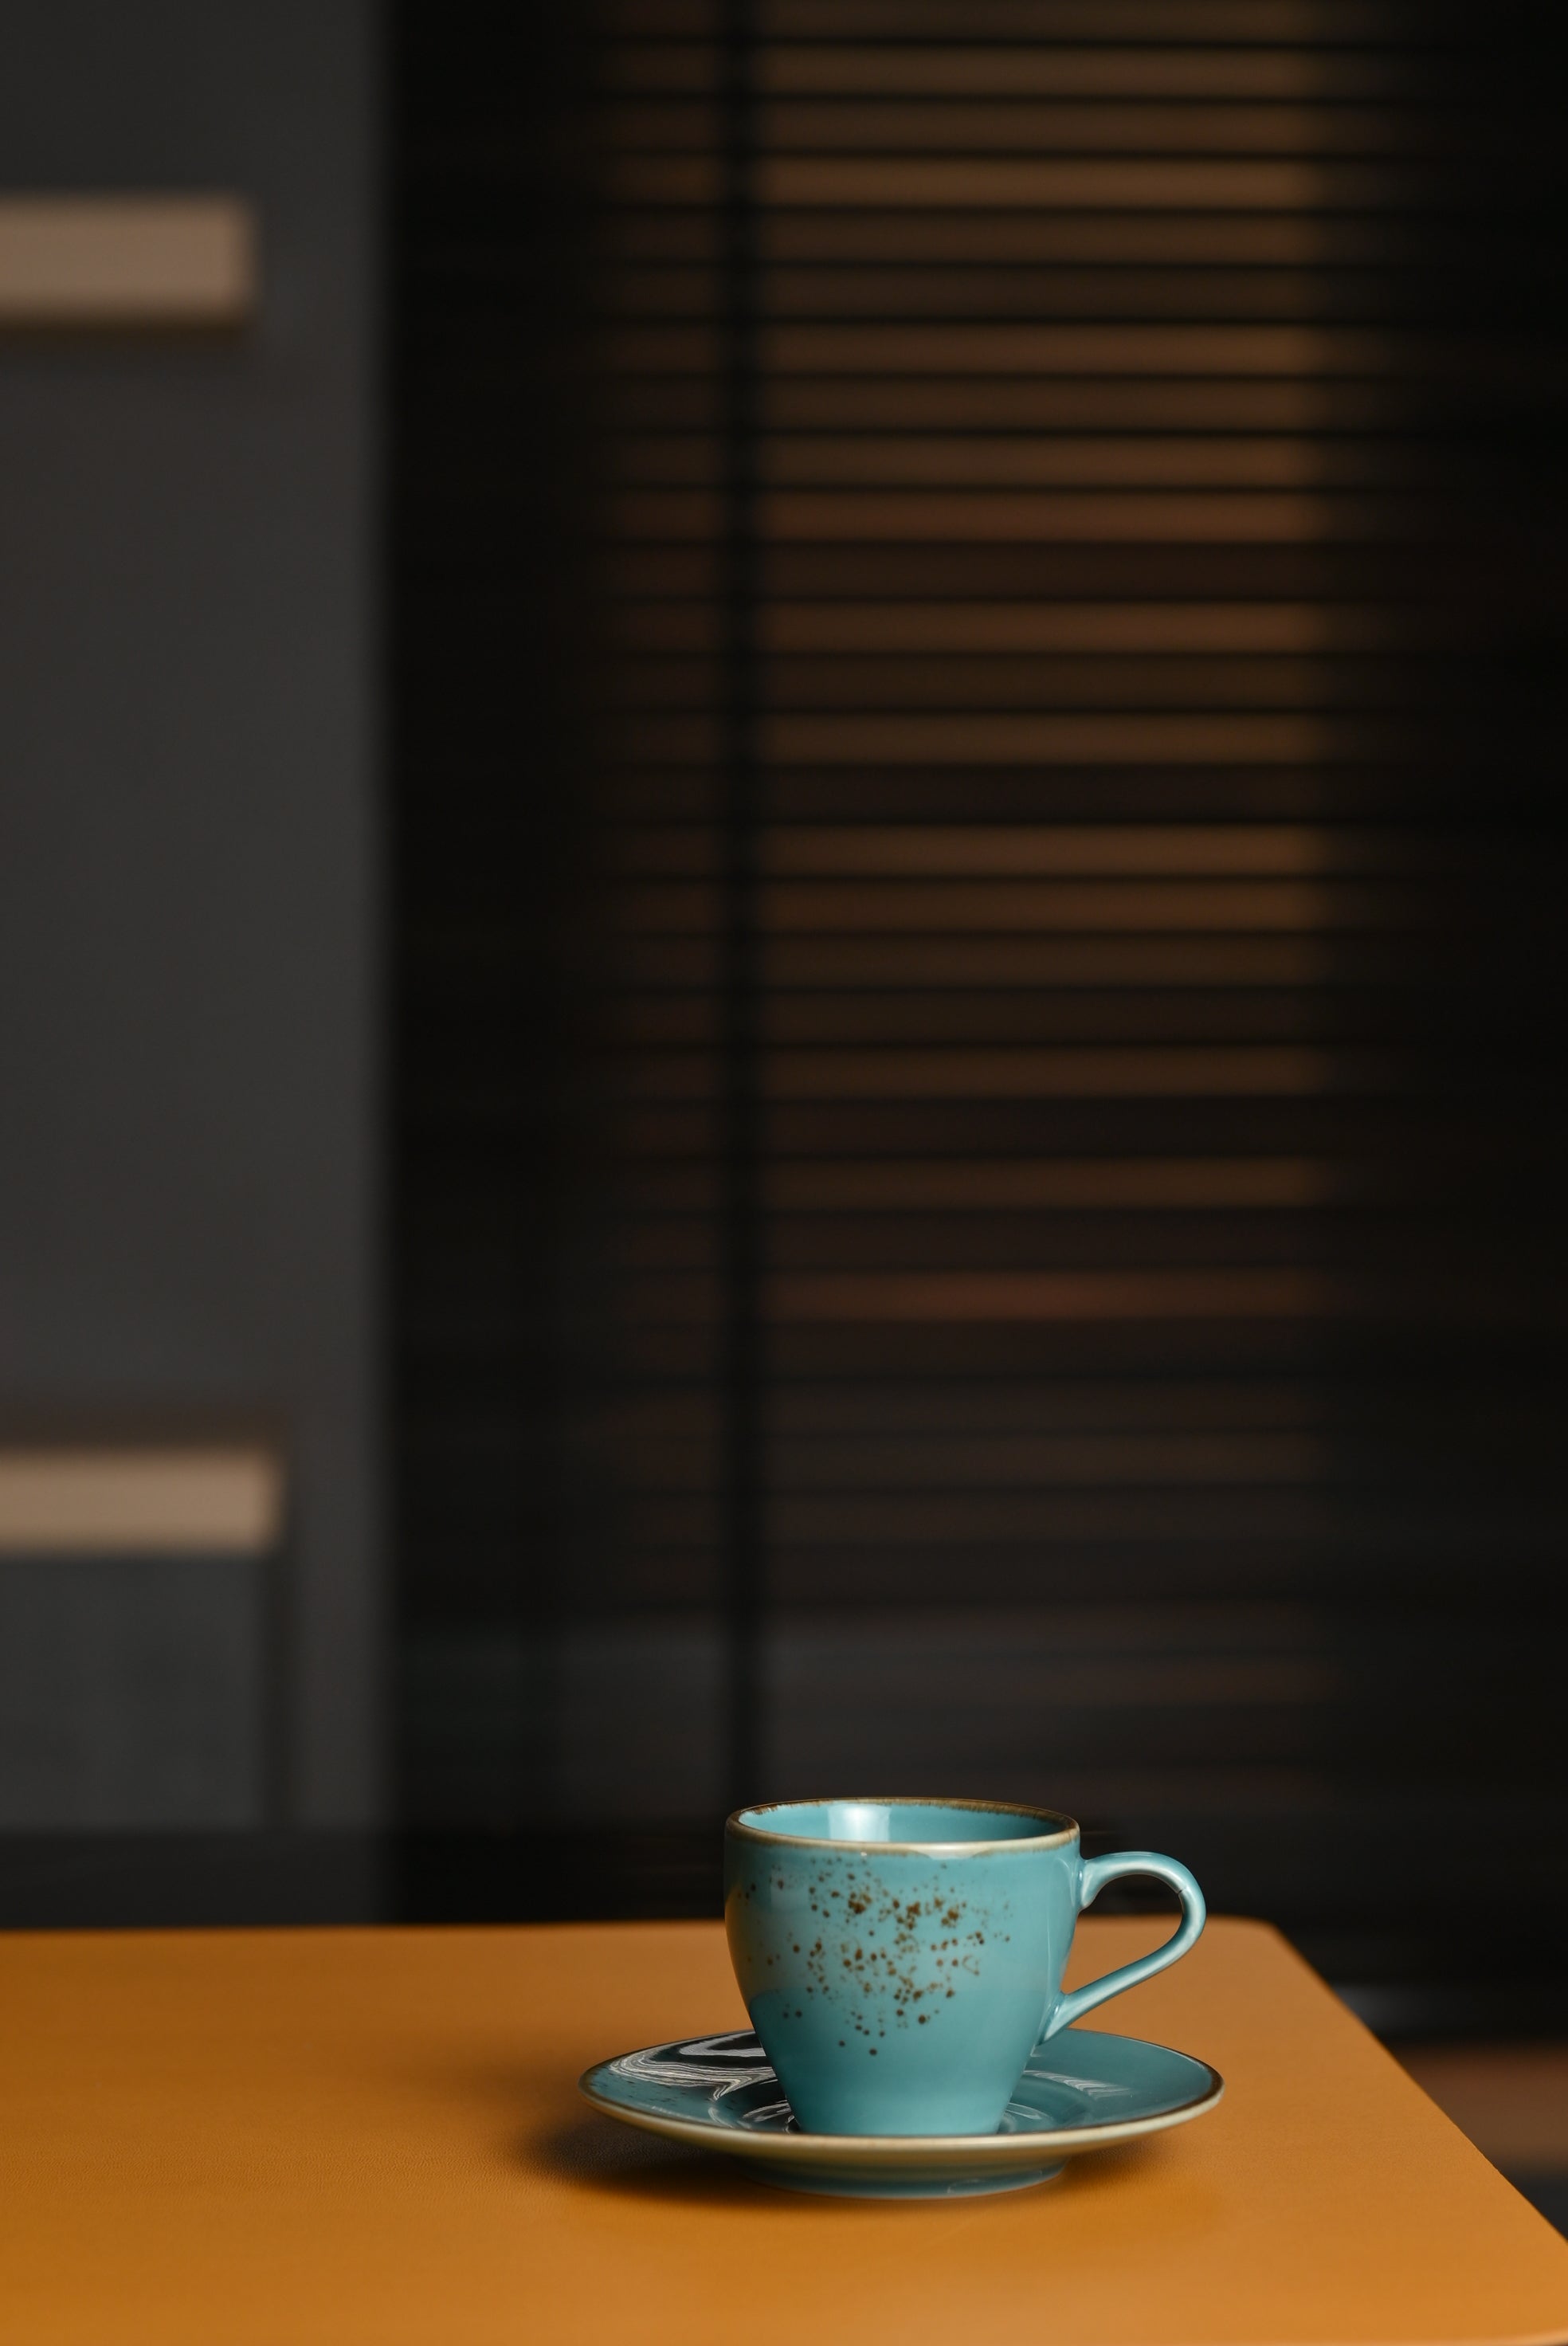 Premium Blue Ceramic Espresso Cup with a Saucer